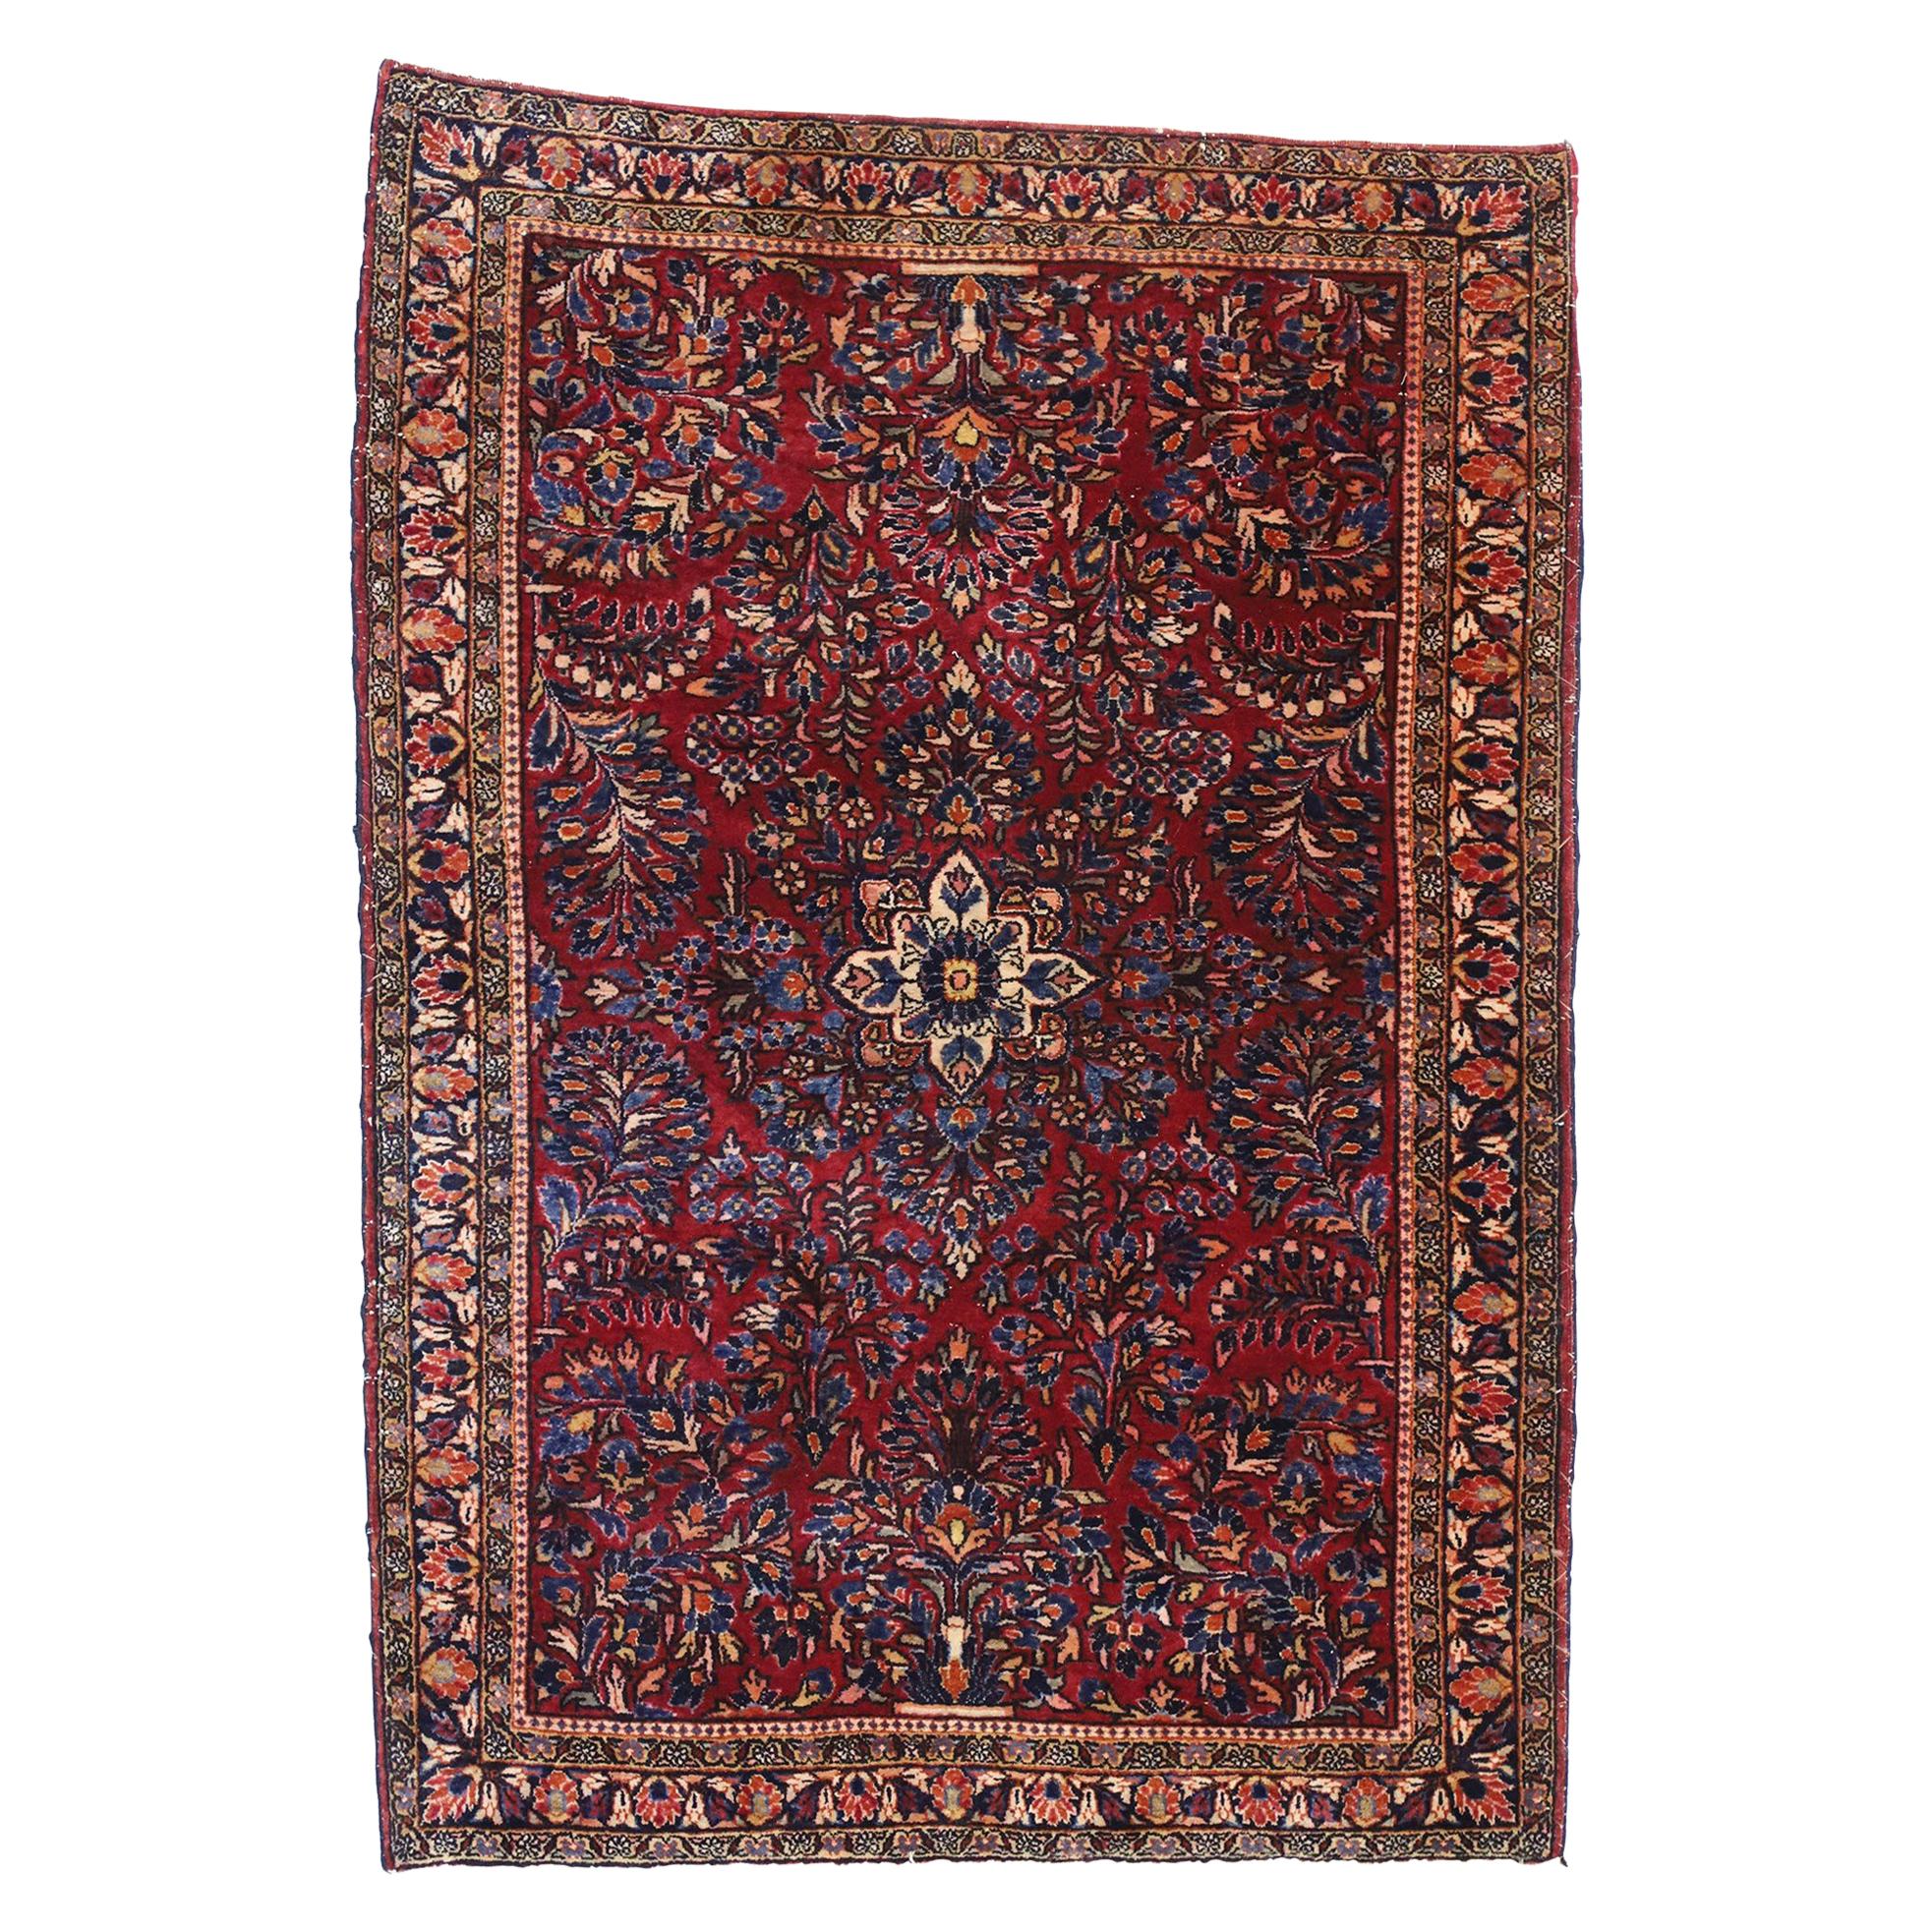 Antiker persischer Sarouk-Teppich mit Vasenmuster und Schachtelteppich im viktorianischen Stil